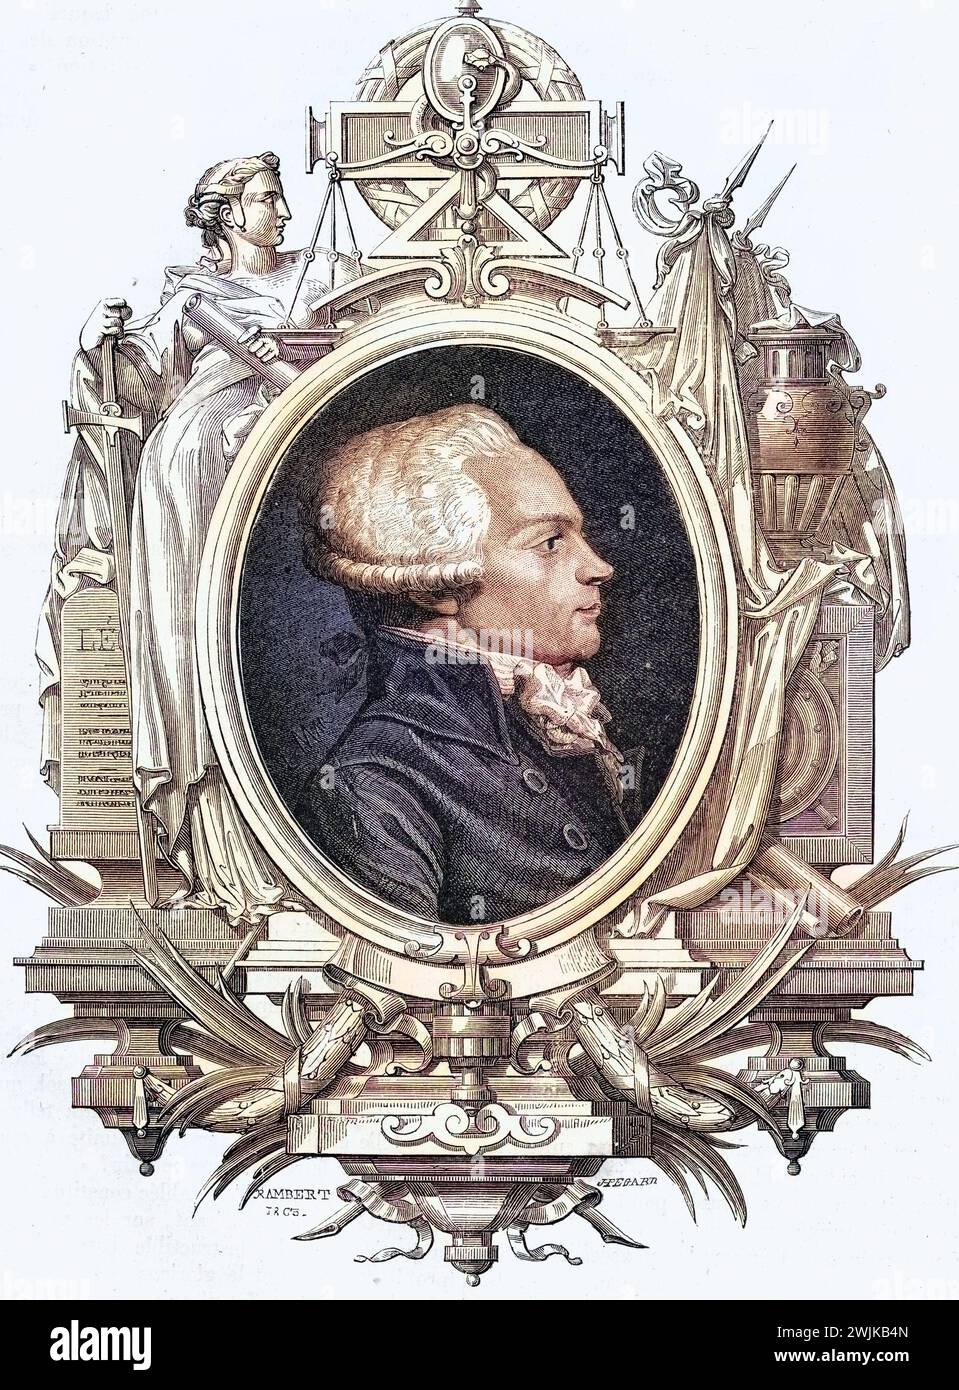 Maximilien Robespierre, 1758-1794, Anführer der Jakobiner während der Französischen Revolution, Historisch, digital restaurierte Reproduktion von einer Vorlage aus dem 19. Jahrhundert, Datum nicht angegeben Stockfoto